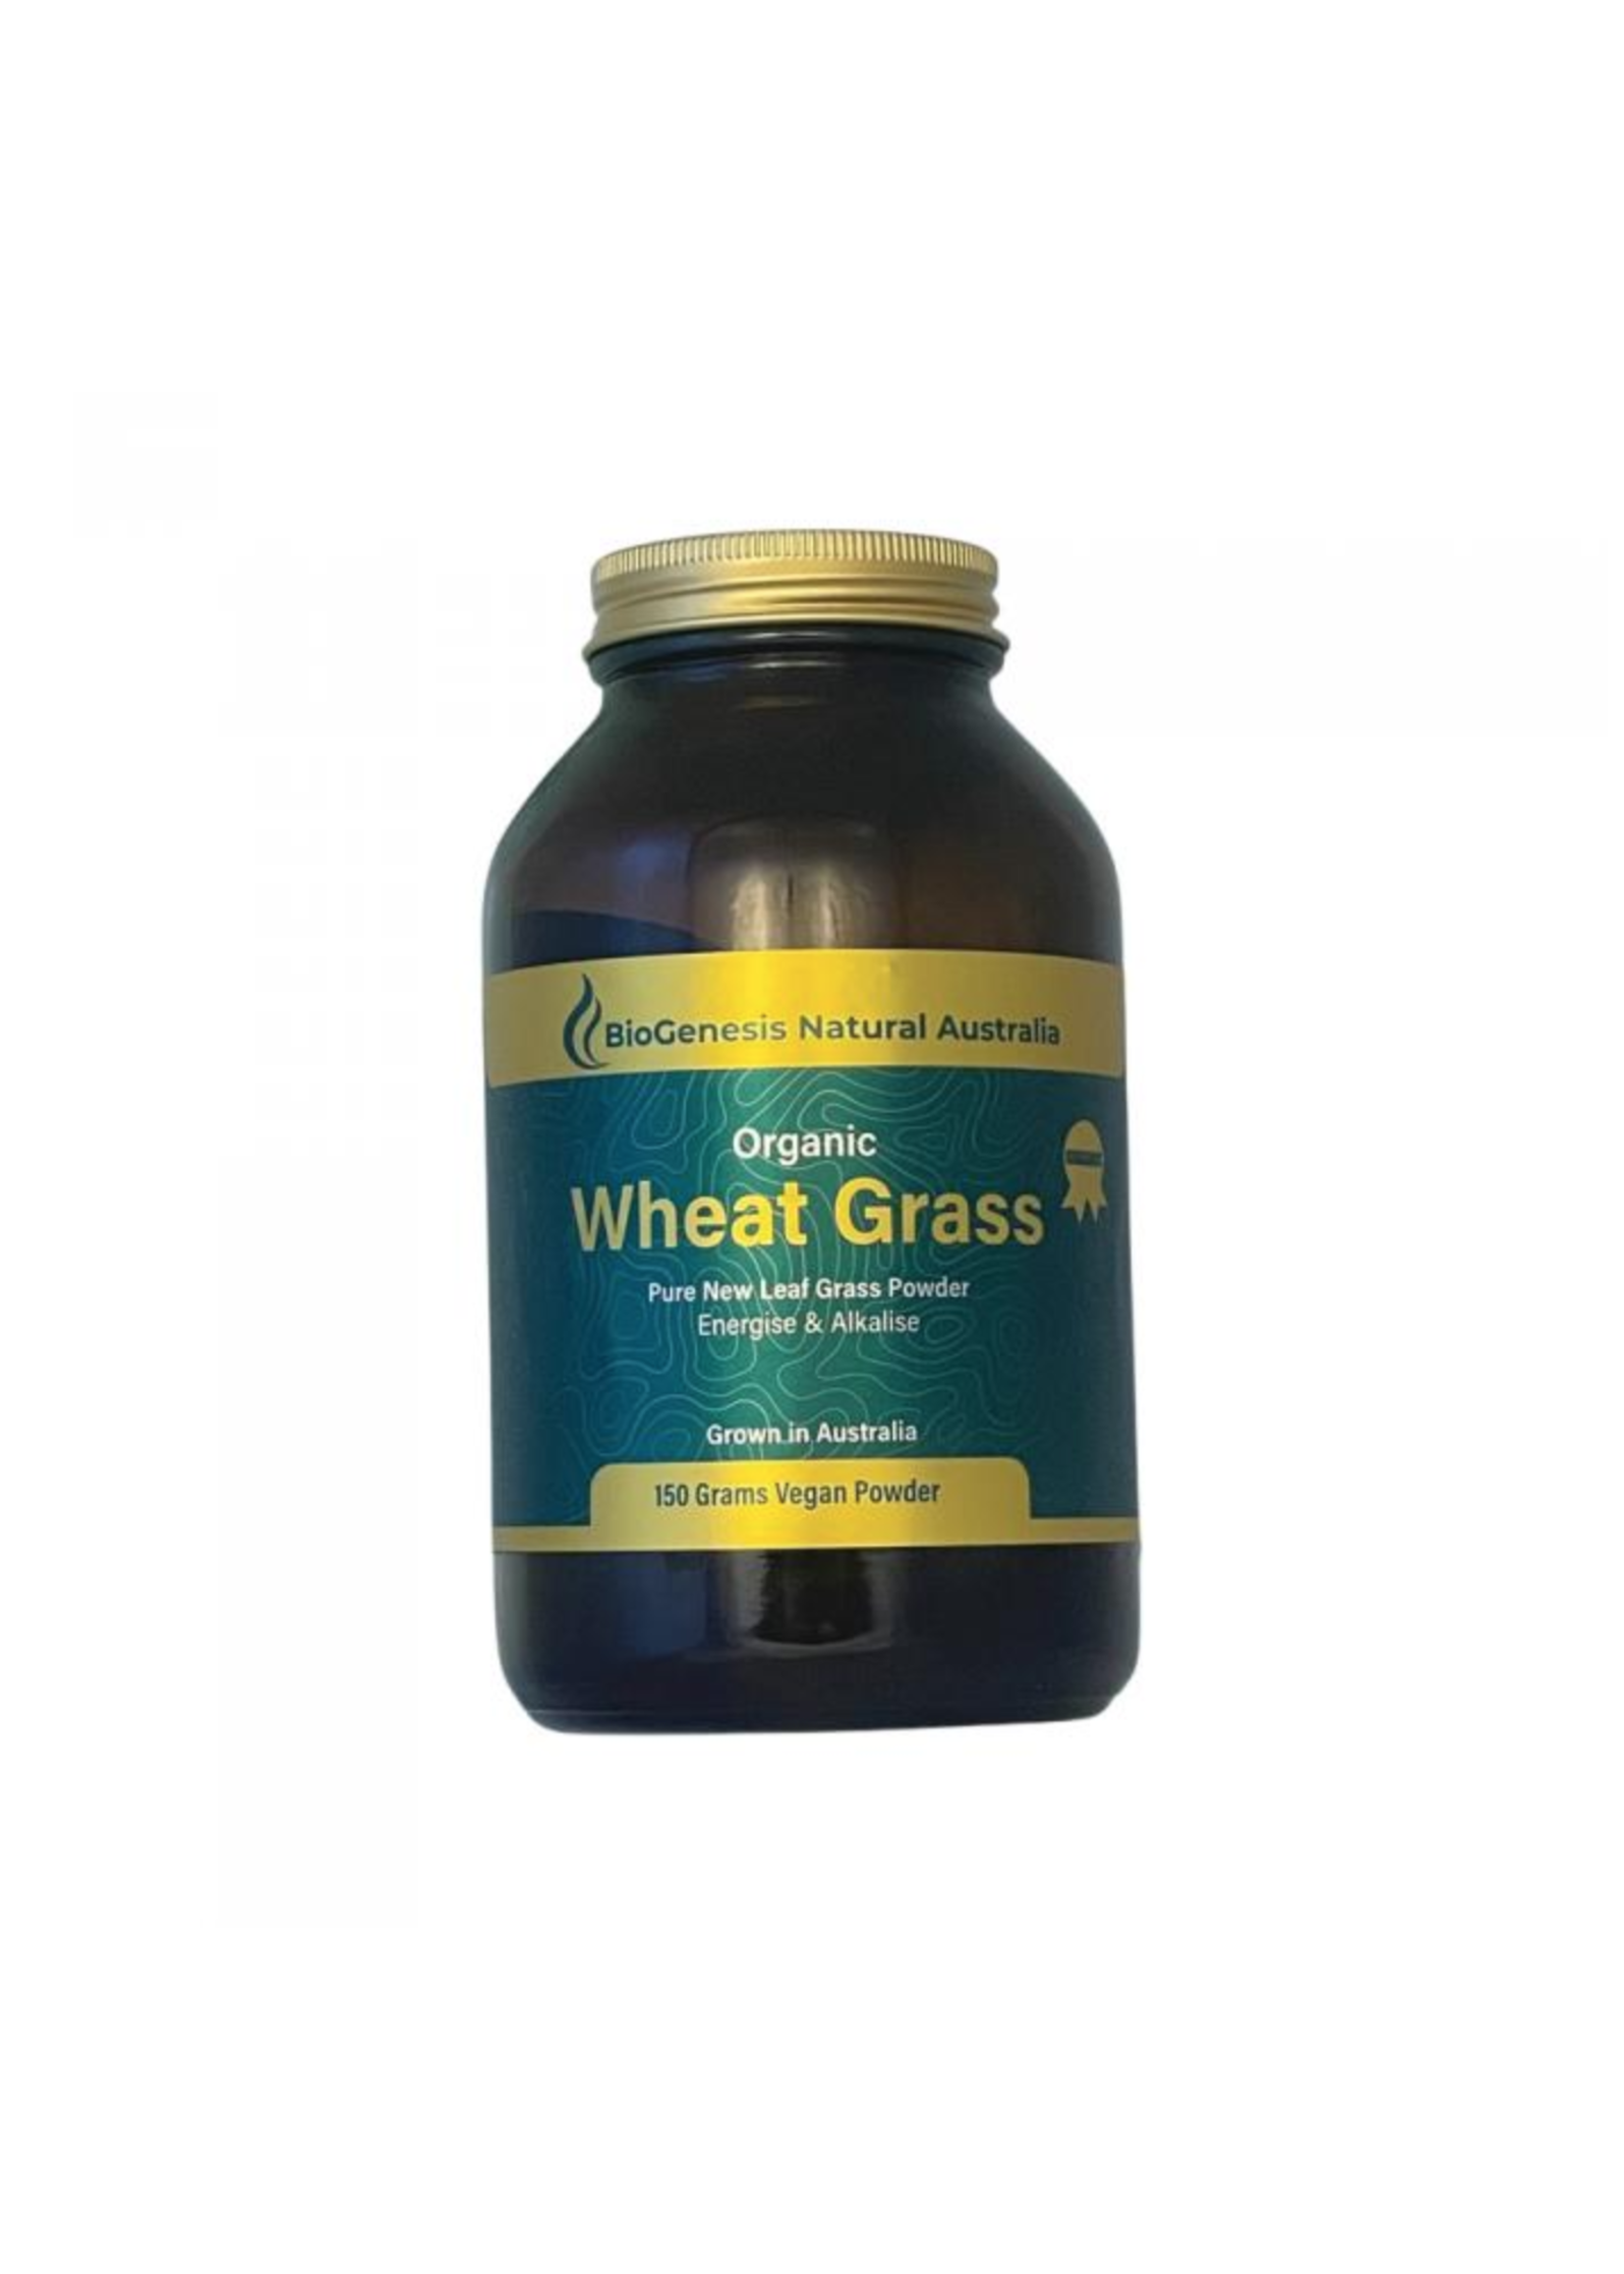 Biogenesis Natural Australia BioGenesis Organic Wheat Grass 150g